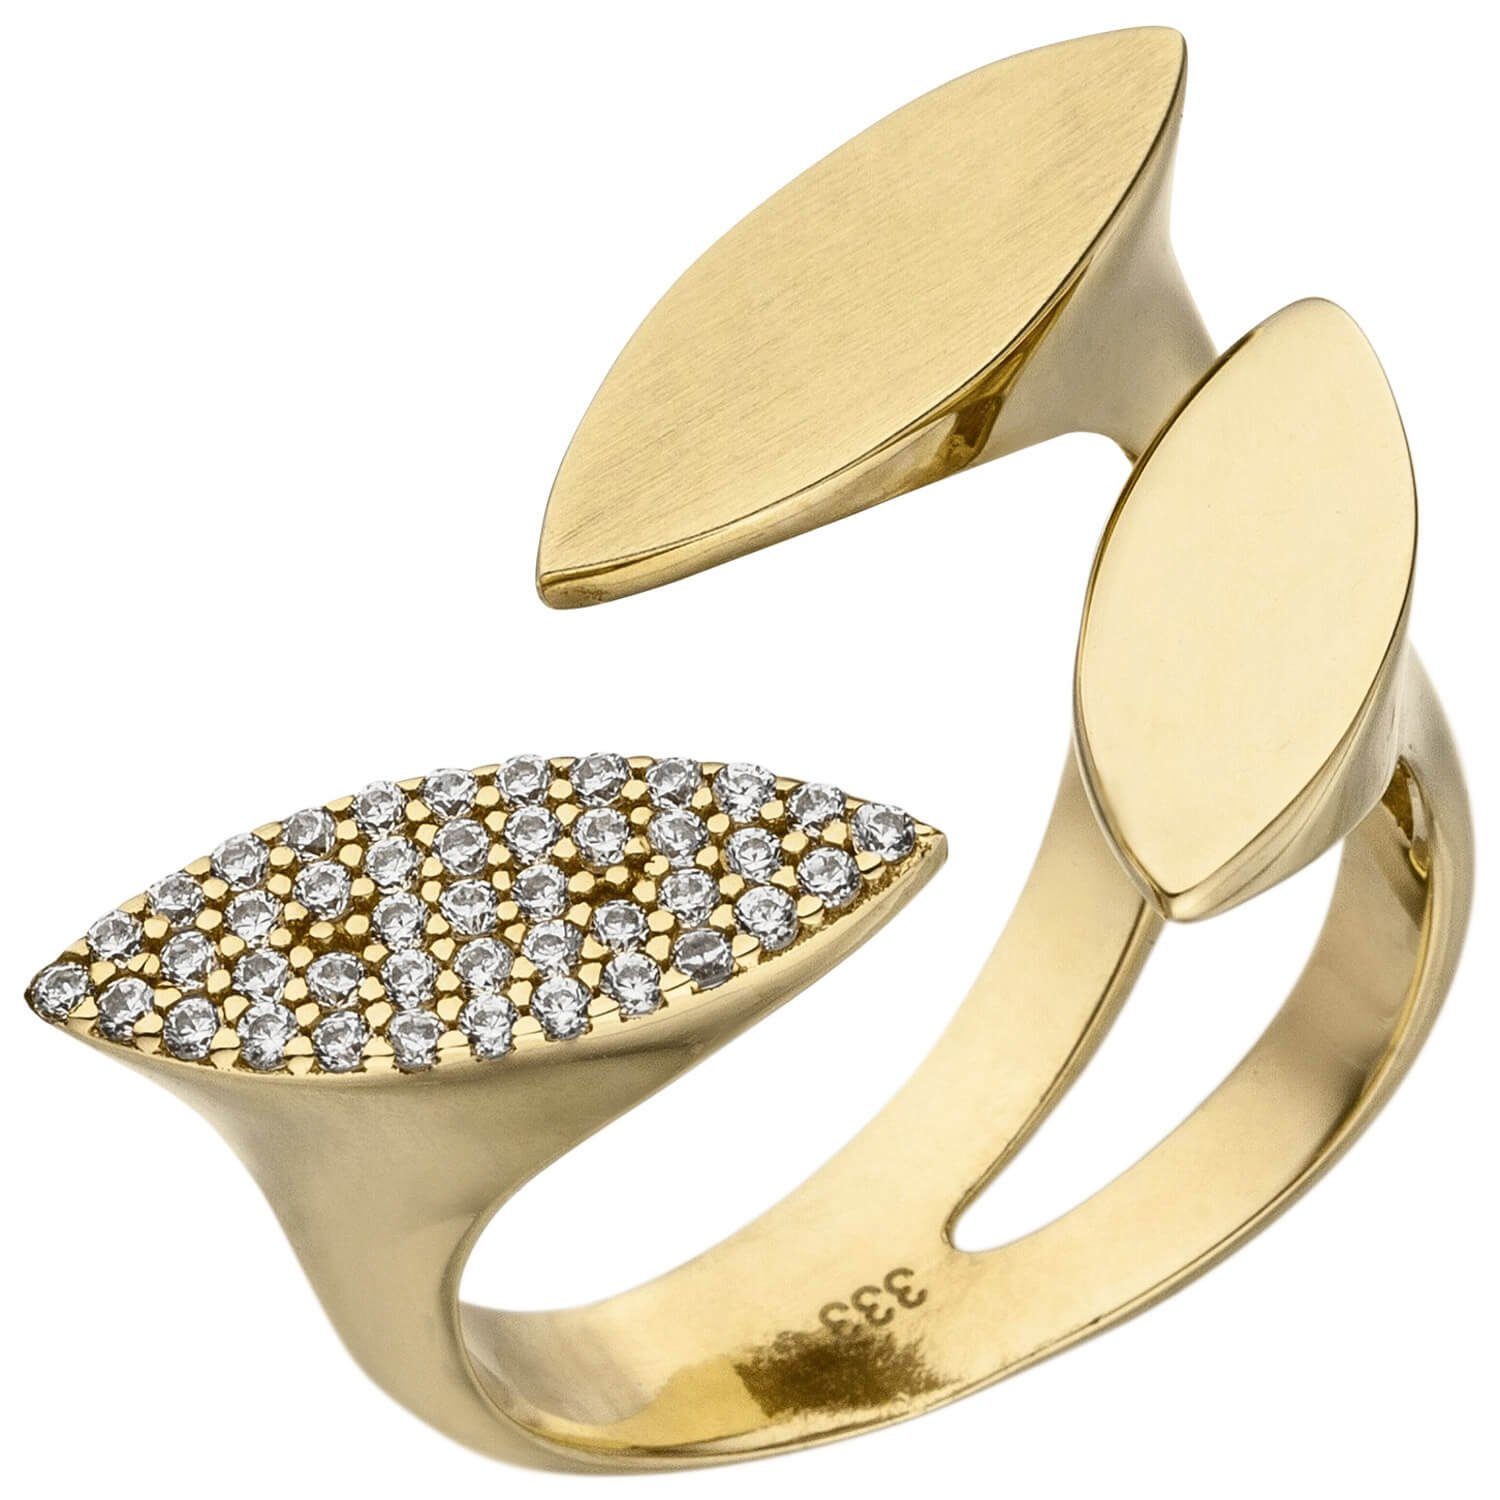 Schmuck Krone Fingerring Offener Ring Damenring mit 40 Zirkonia weiß 333 Gold Gelbgold glänzend B: 21,7mm, Gold 333